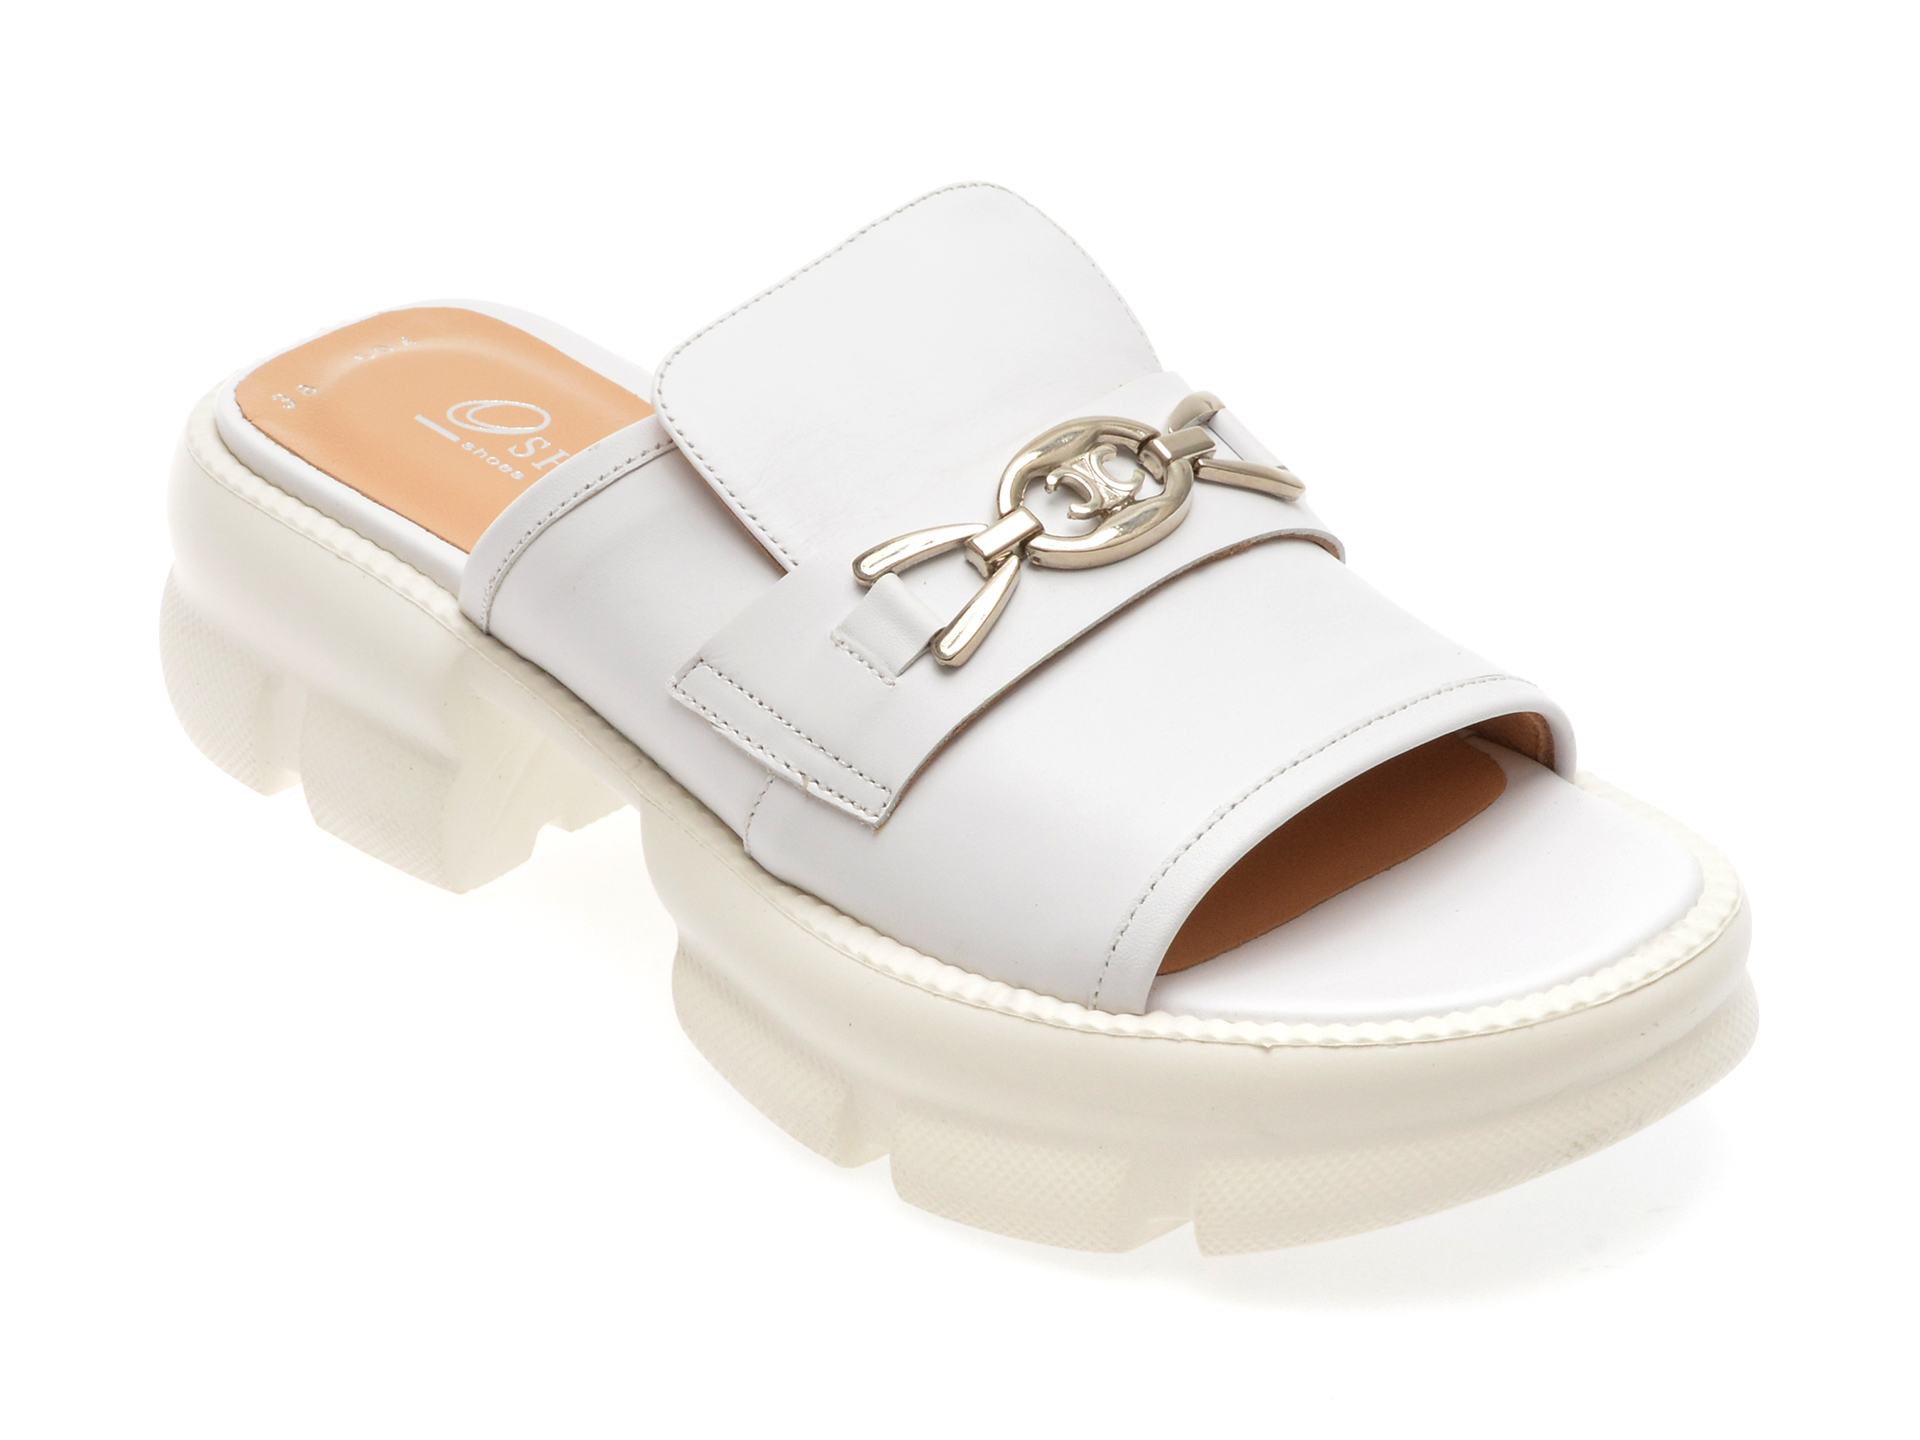 Papuci casual OSHADE albi, 43002, din piele naturala